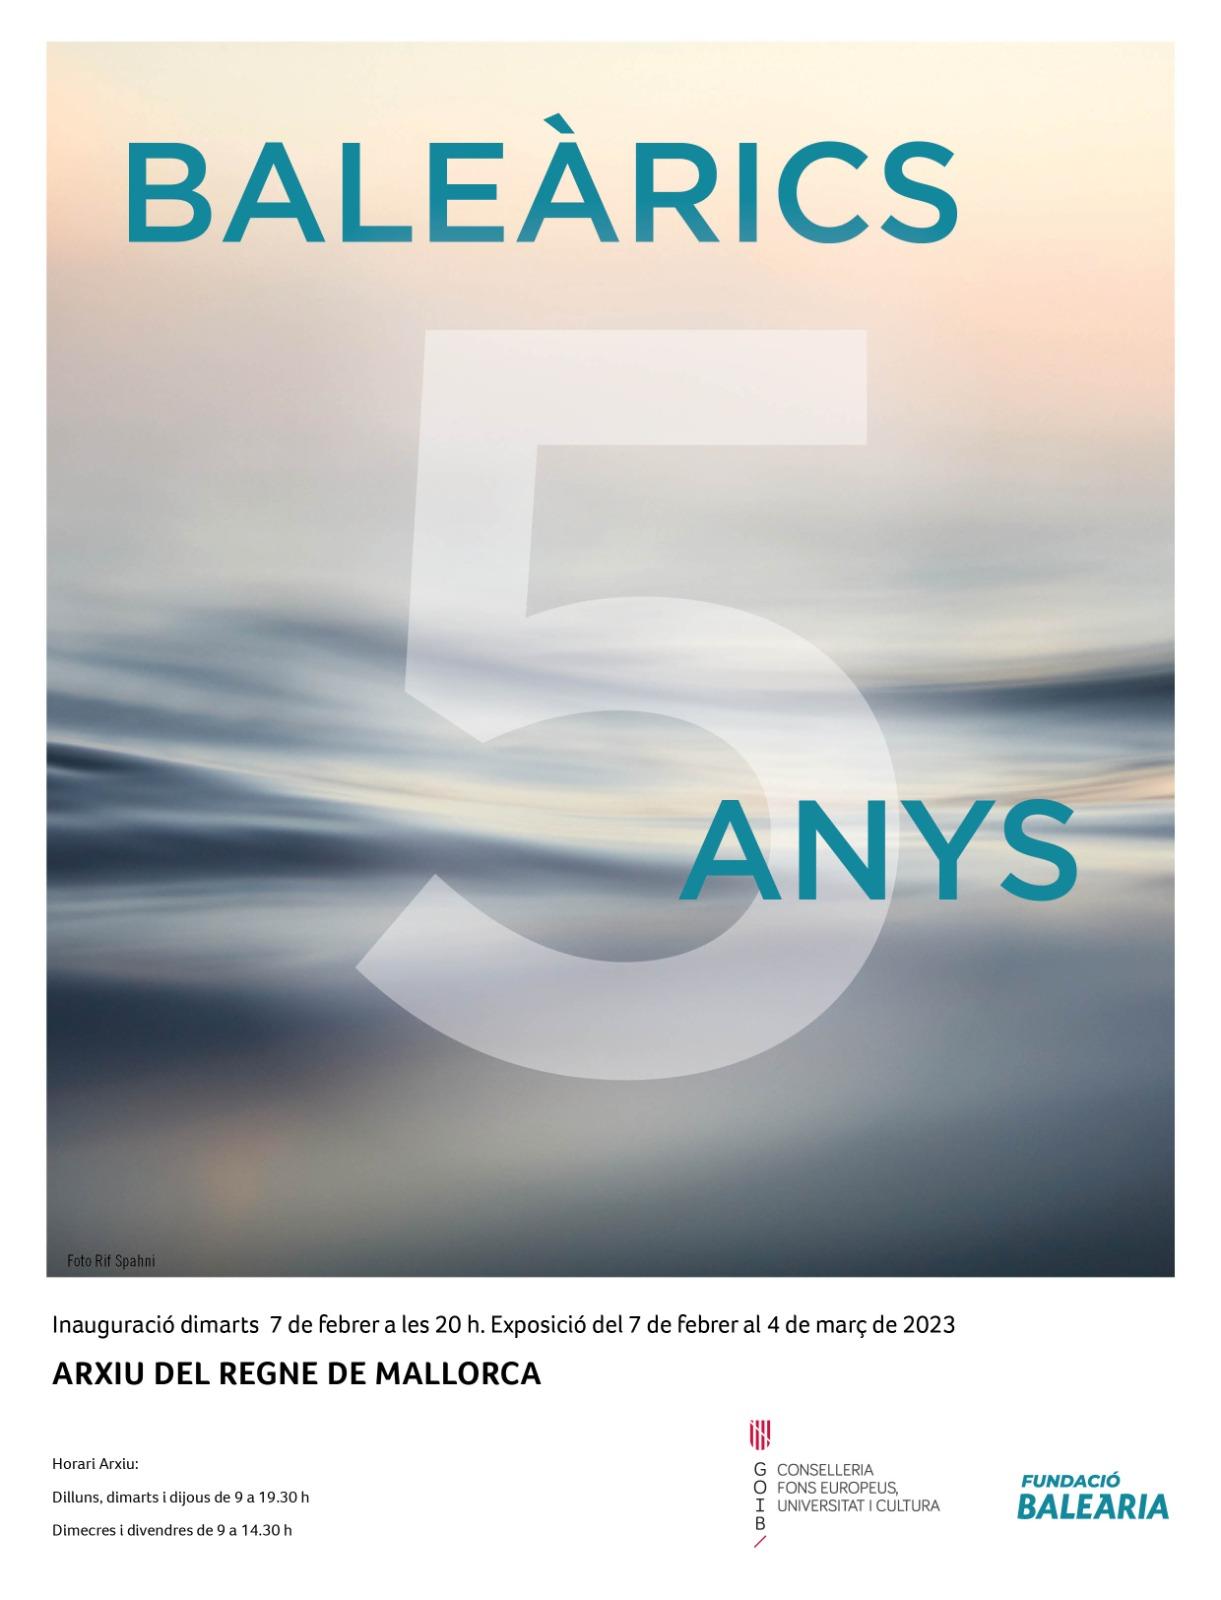 La Fundació Baleària inaugura la exposición ‘Baleàrics 5 Anys’ en el Arxiu del Regne de Mallorca